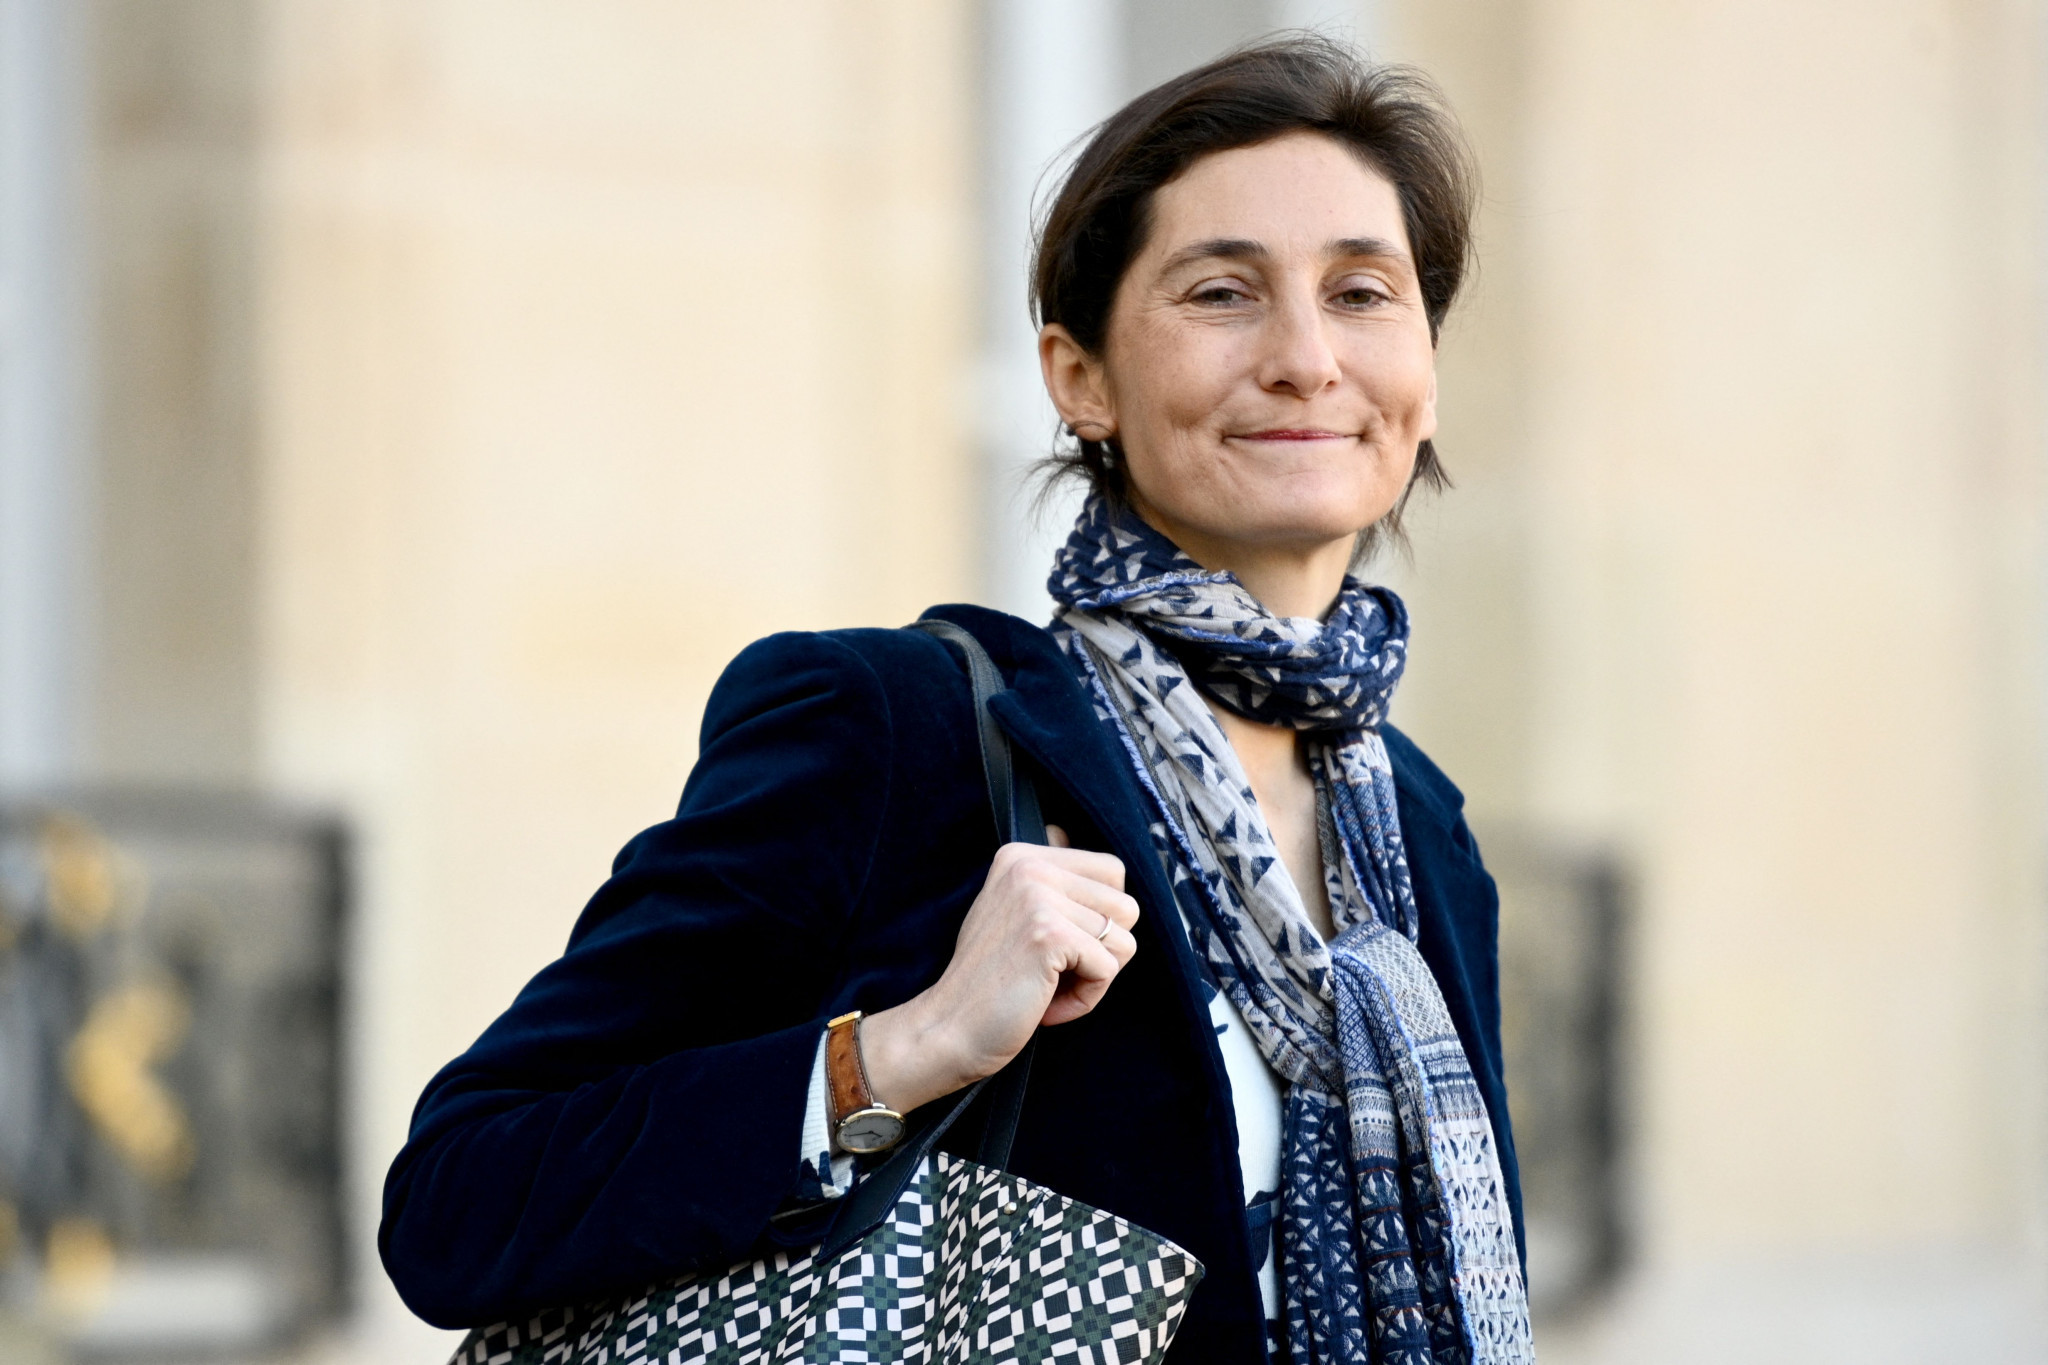 Sports Minister Amélie Oudéa-Castéra called the passing of the surveillance bill an 